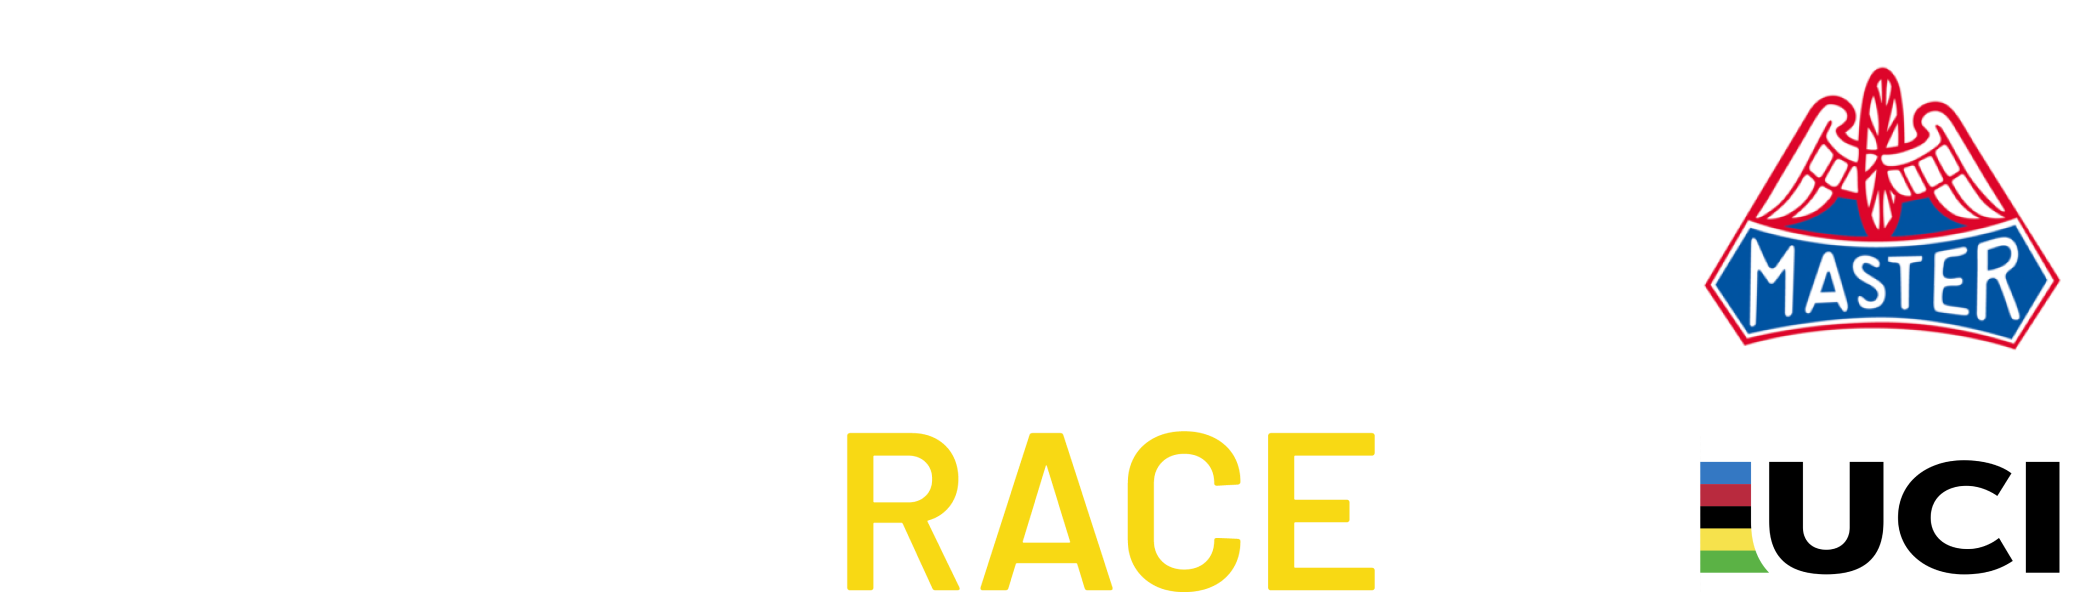 Gothenburg MTB Race